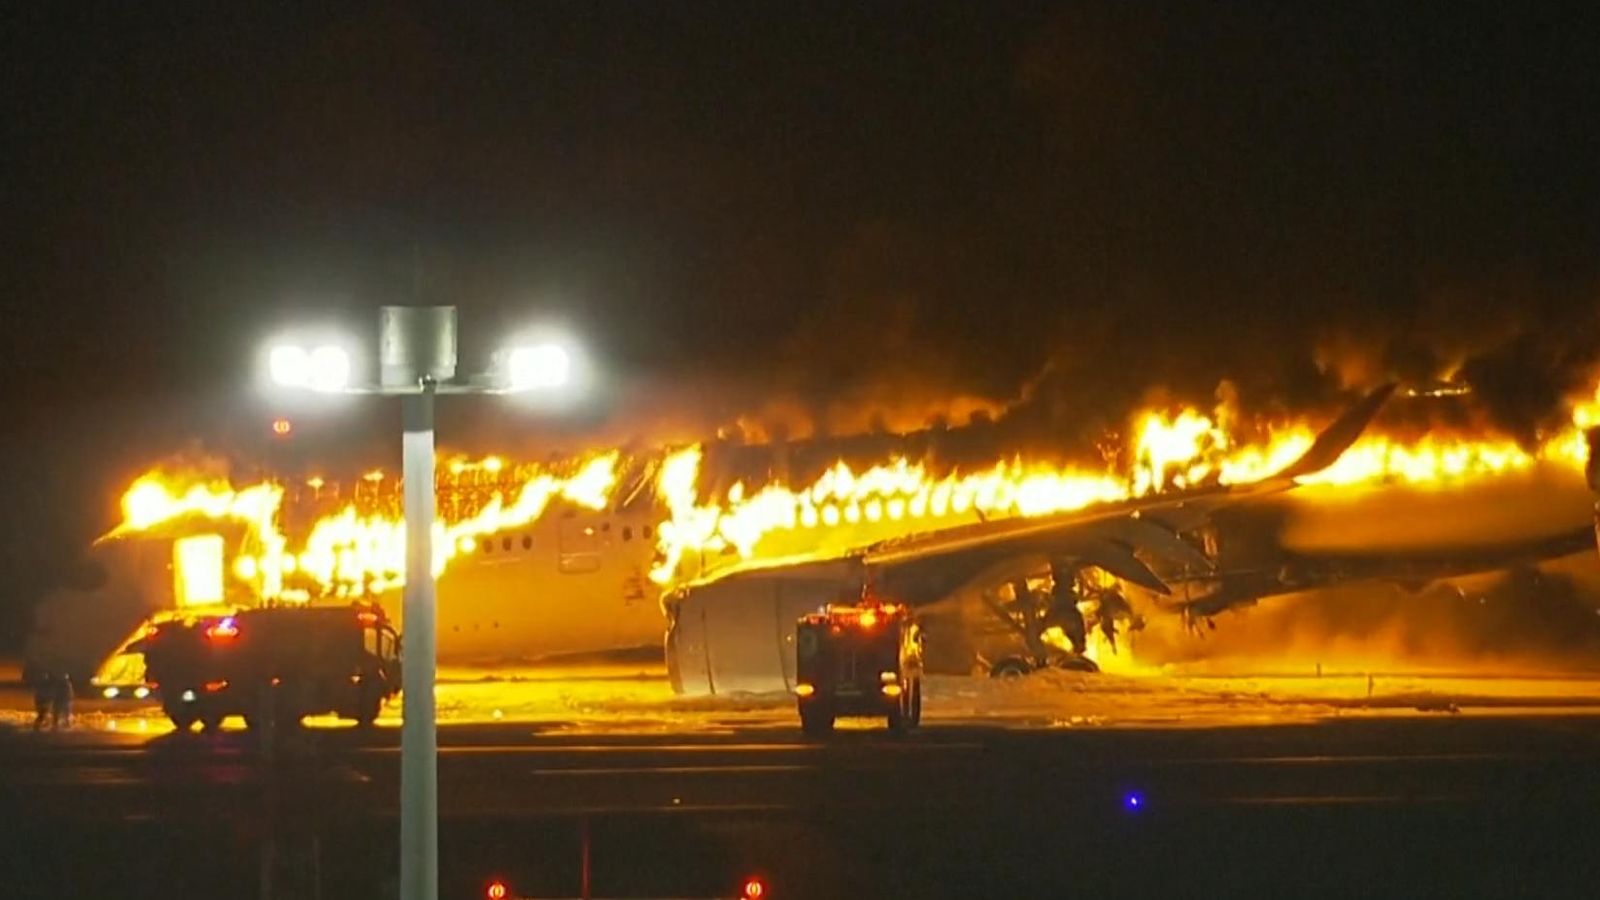 Máy bay Japan Airlines chở hơn 300 hành khách bốc cháy dữ dội tại sân bay Nhật Bản- Ảnh 2.